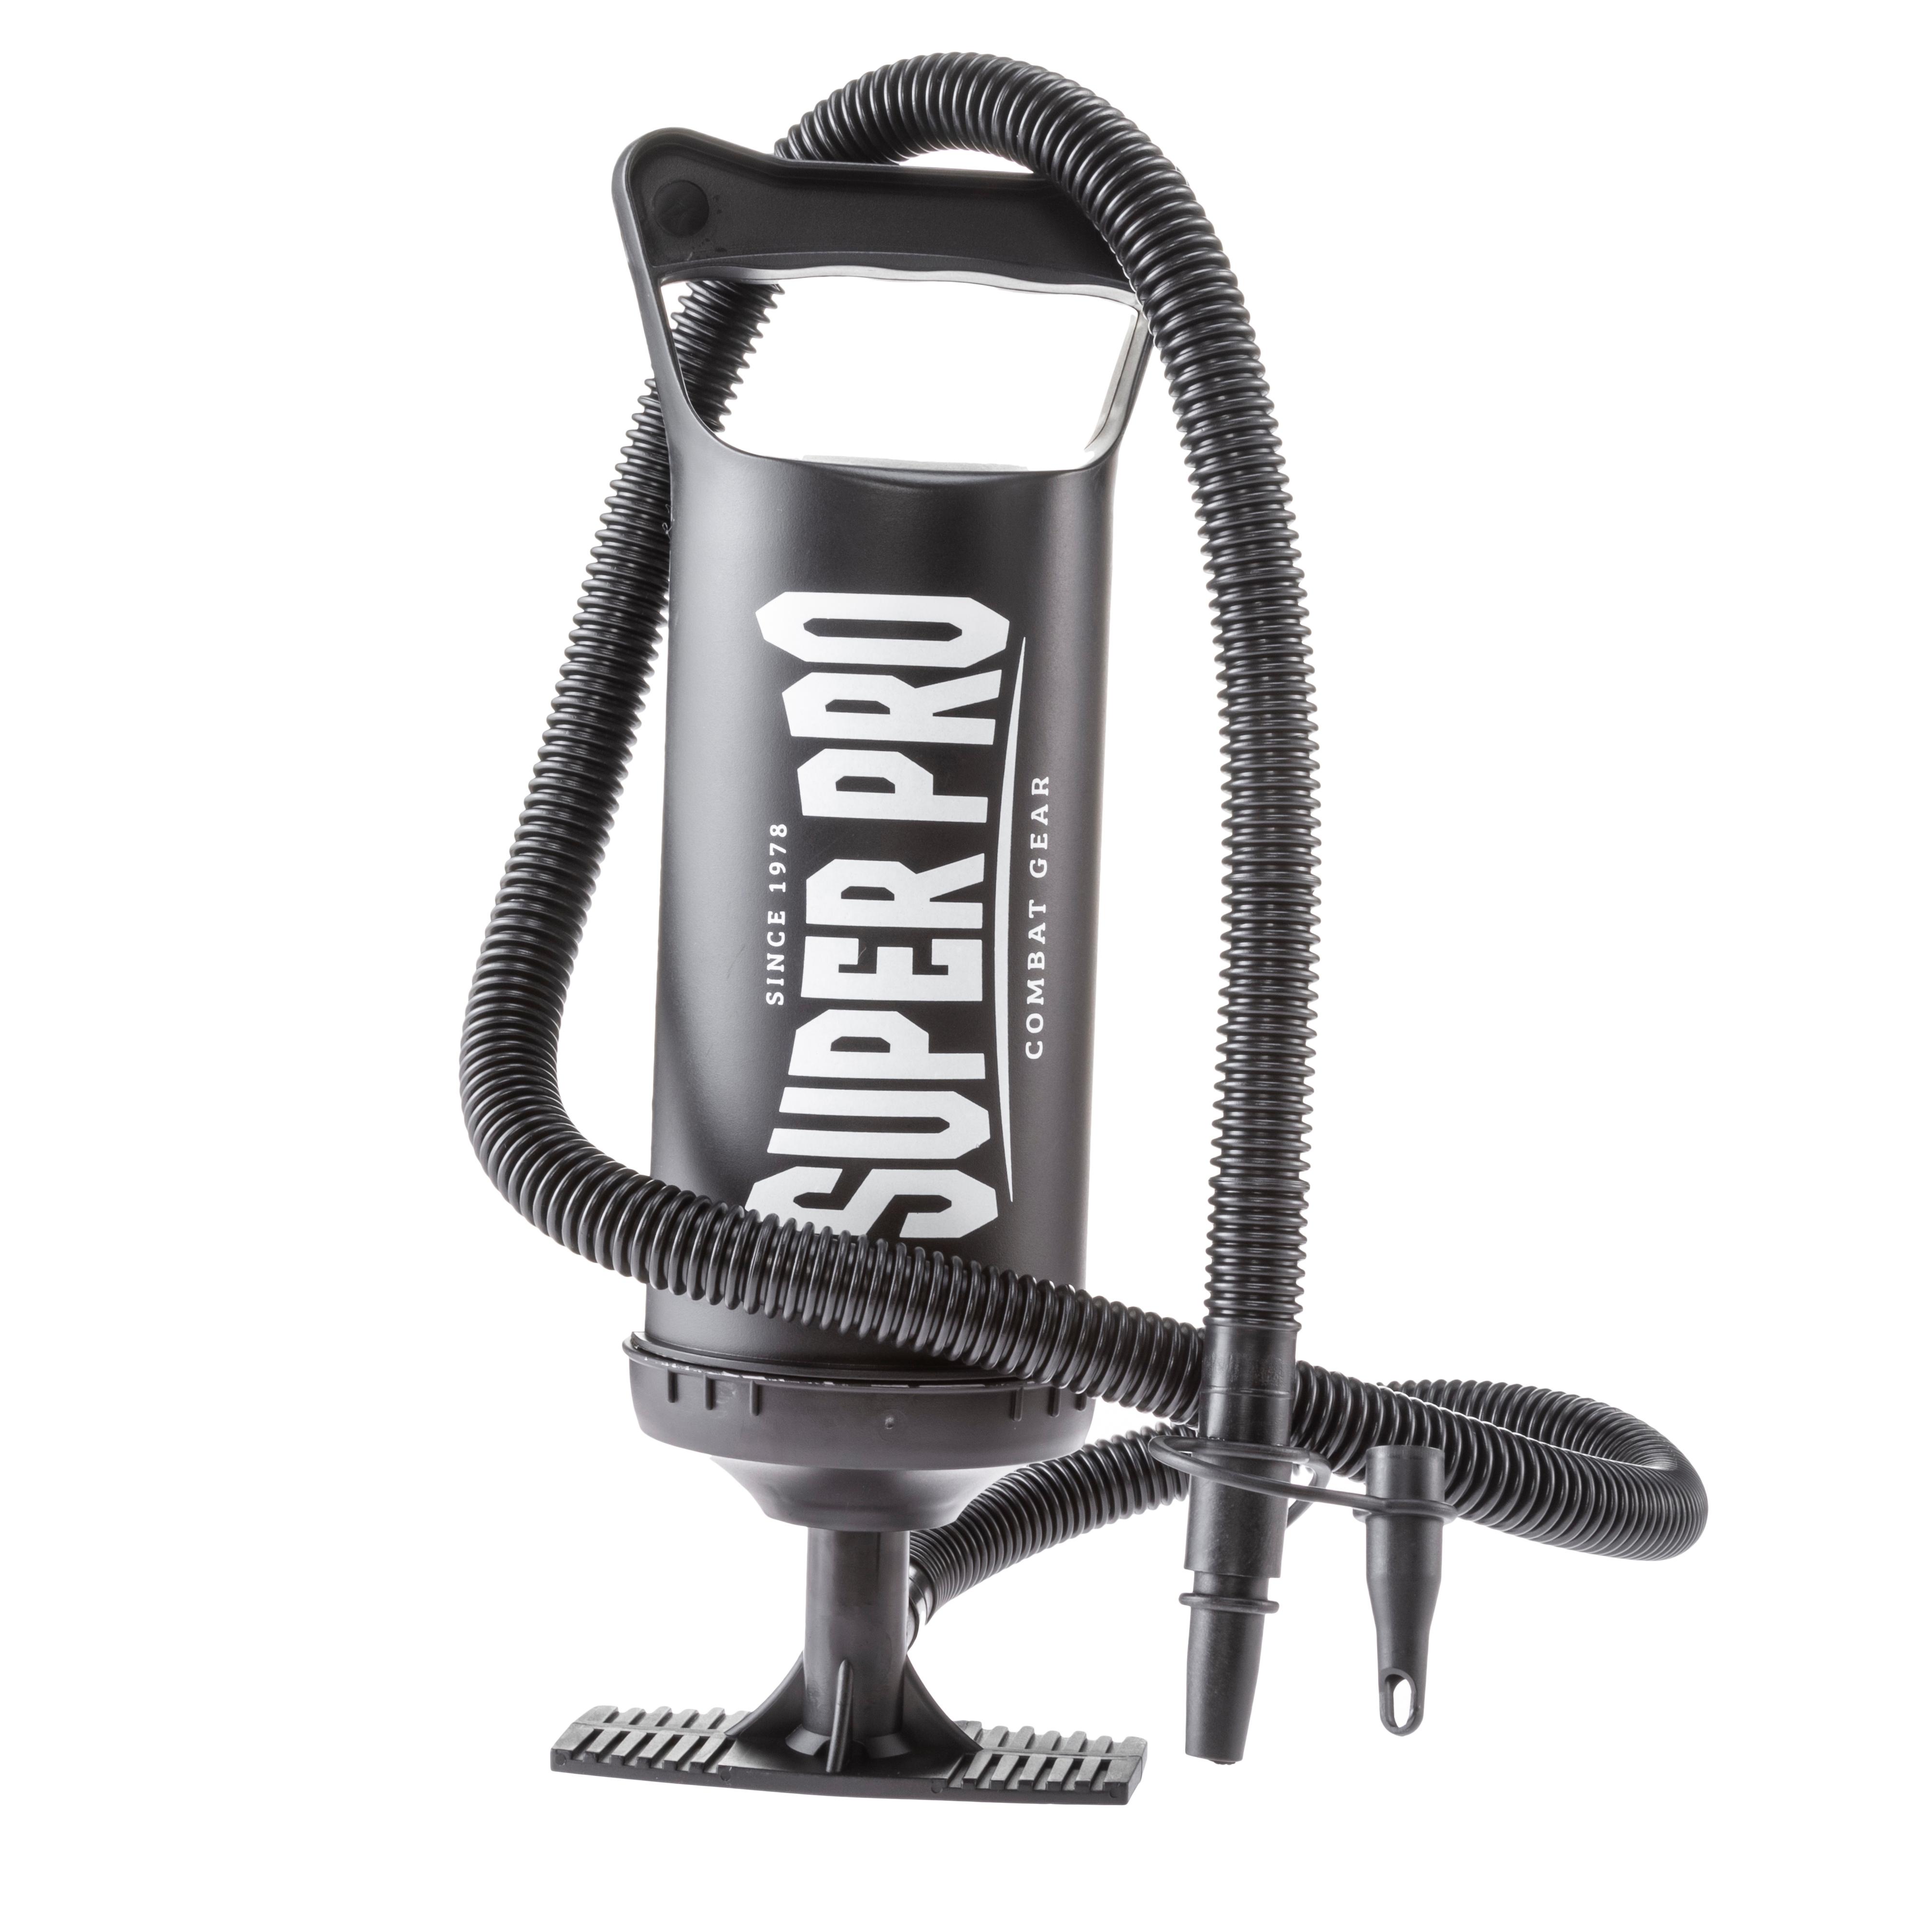 Super Pro Super im kaufen Pro von SportScheck Air Boxsack Shop Water Online black